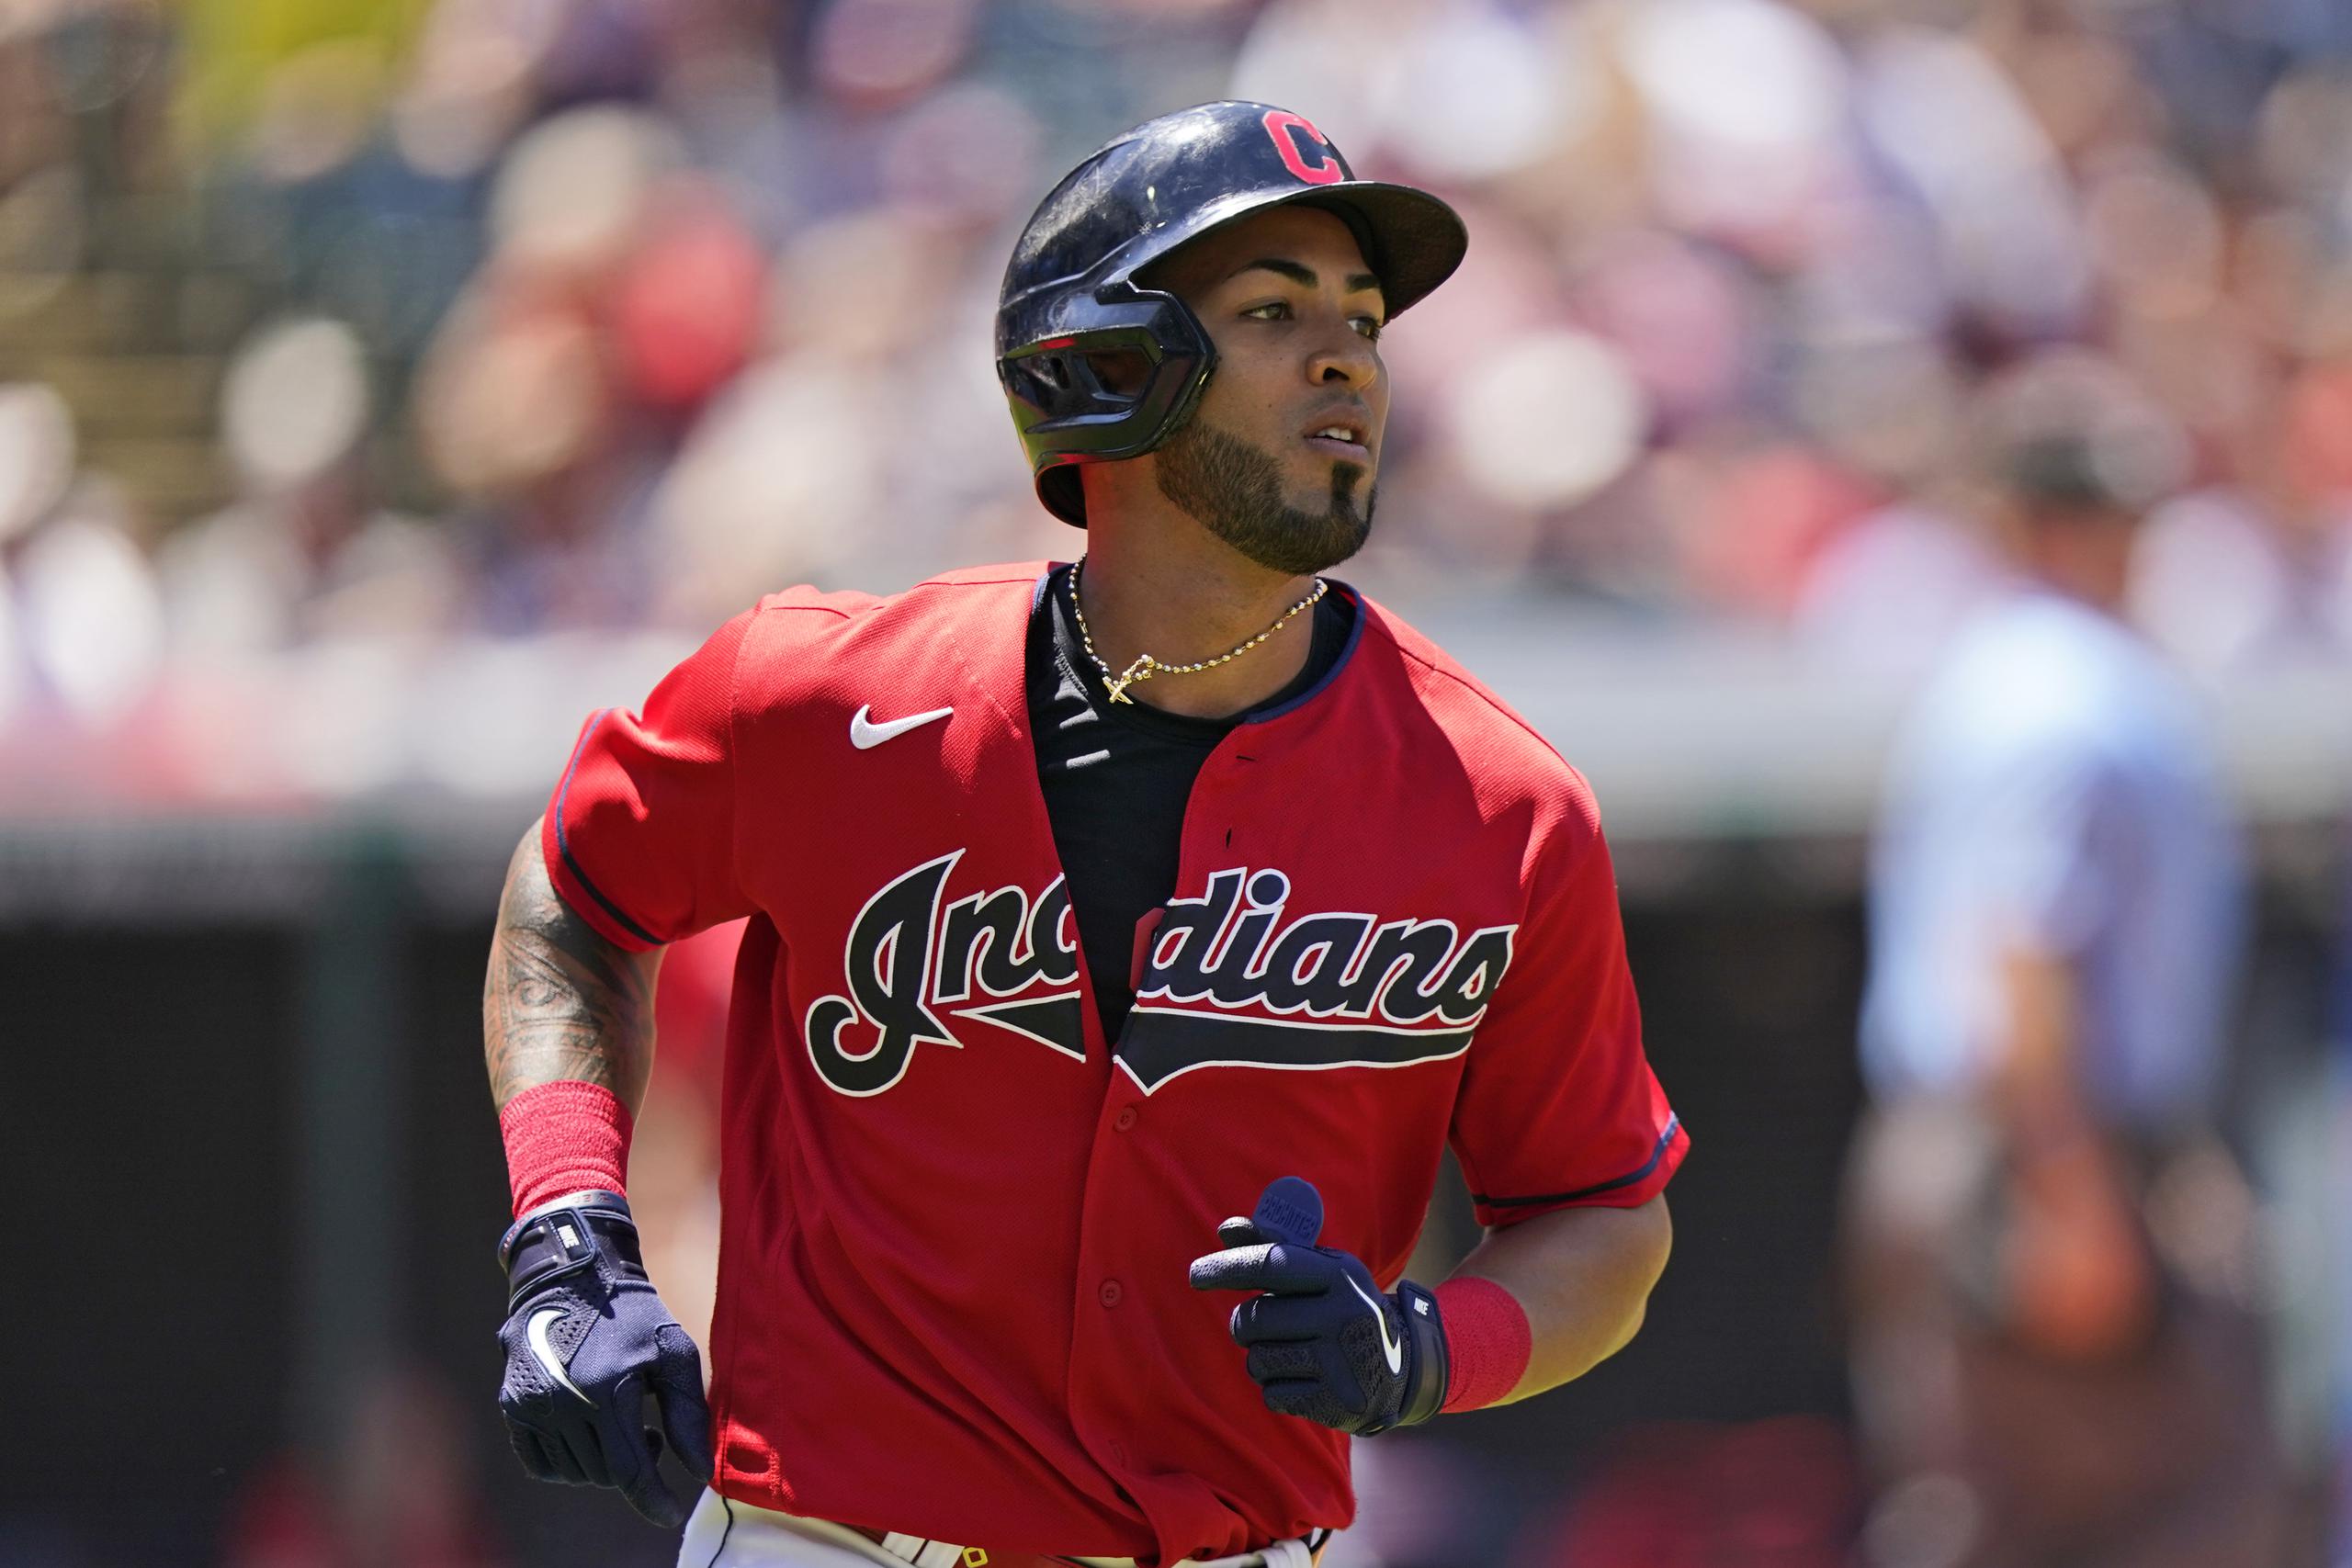 Eddie Rosario ha estado fuera desde el 15 de julio cuando fue colocado en la lista de lesionados mientras era integrante de los Indians de Cleveland.